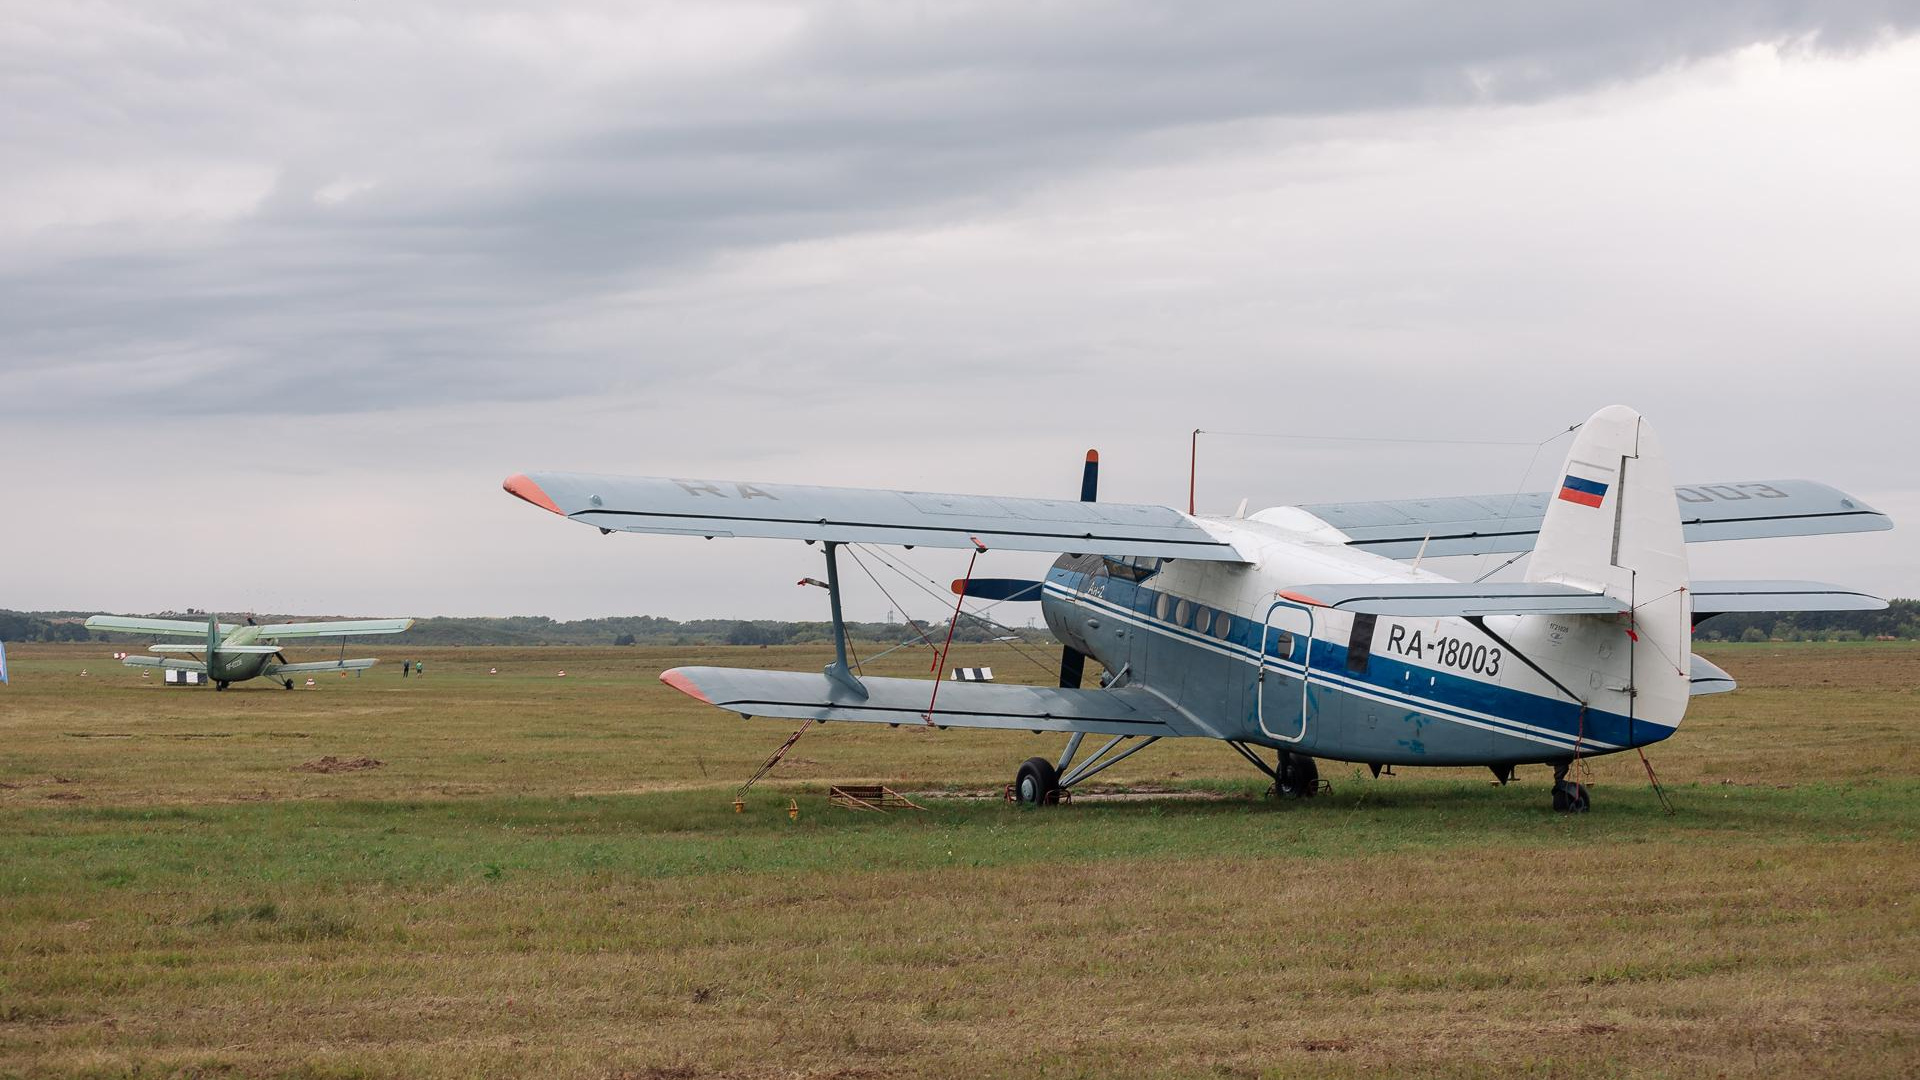 Следовал по неизвестному маршруту: самолет Ан-2 пролетел над Толмачево без разрешения